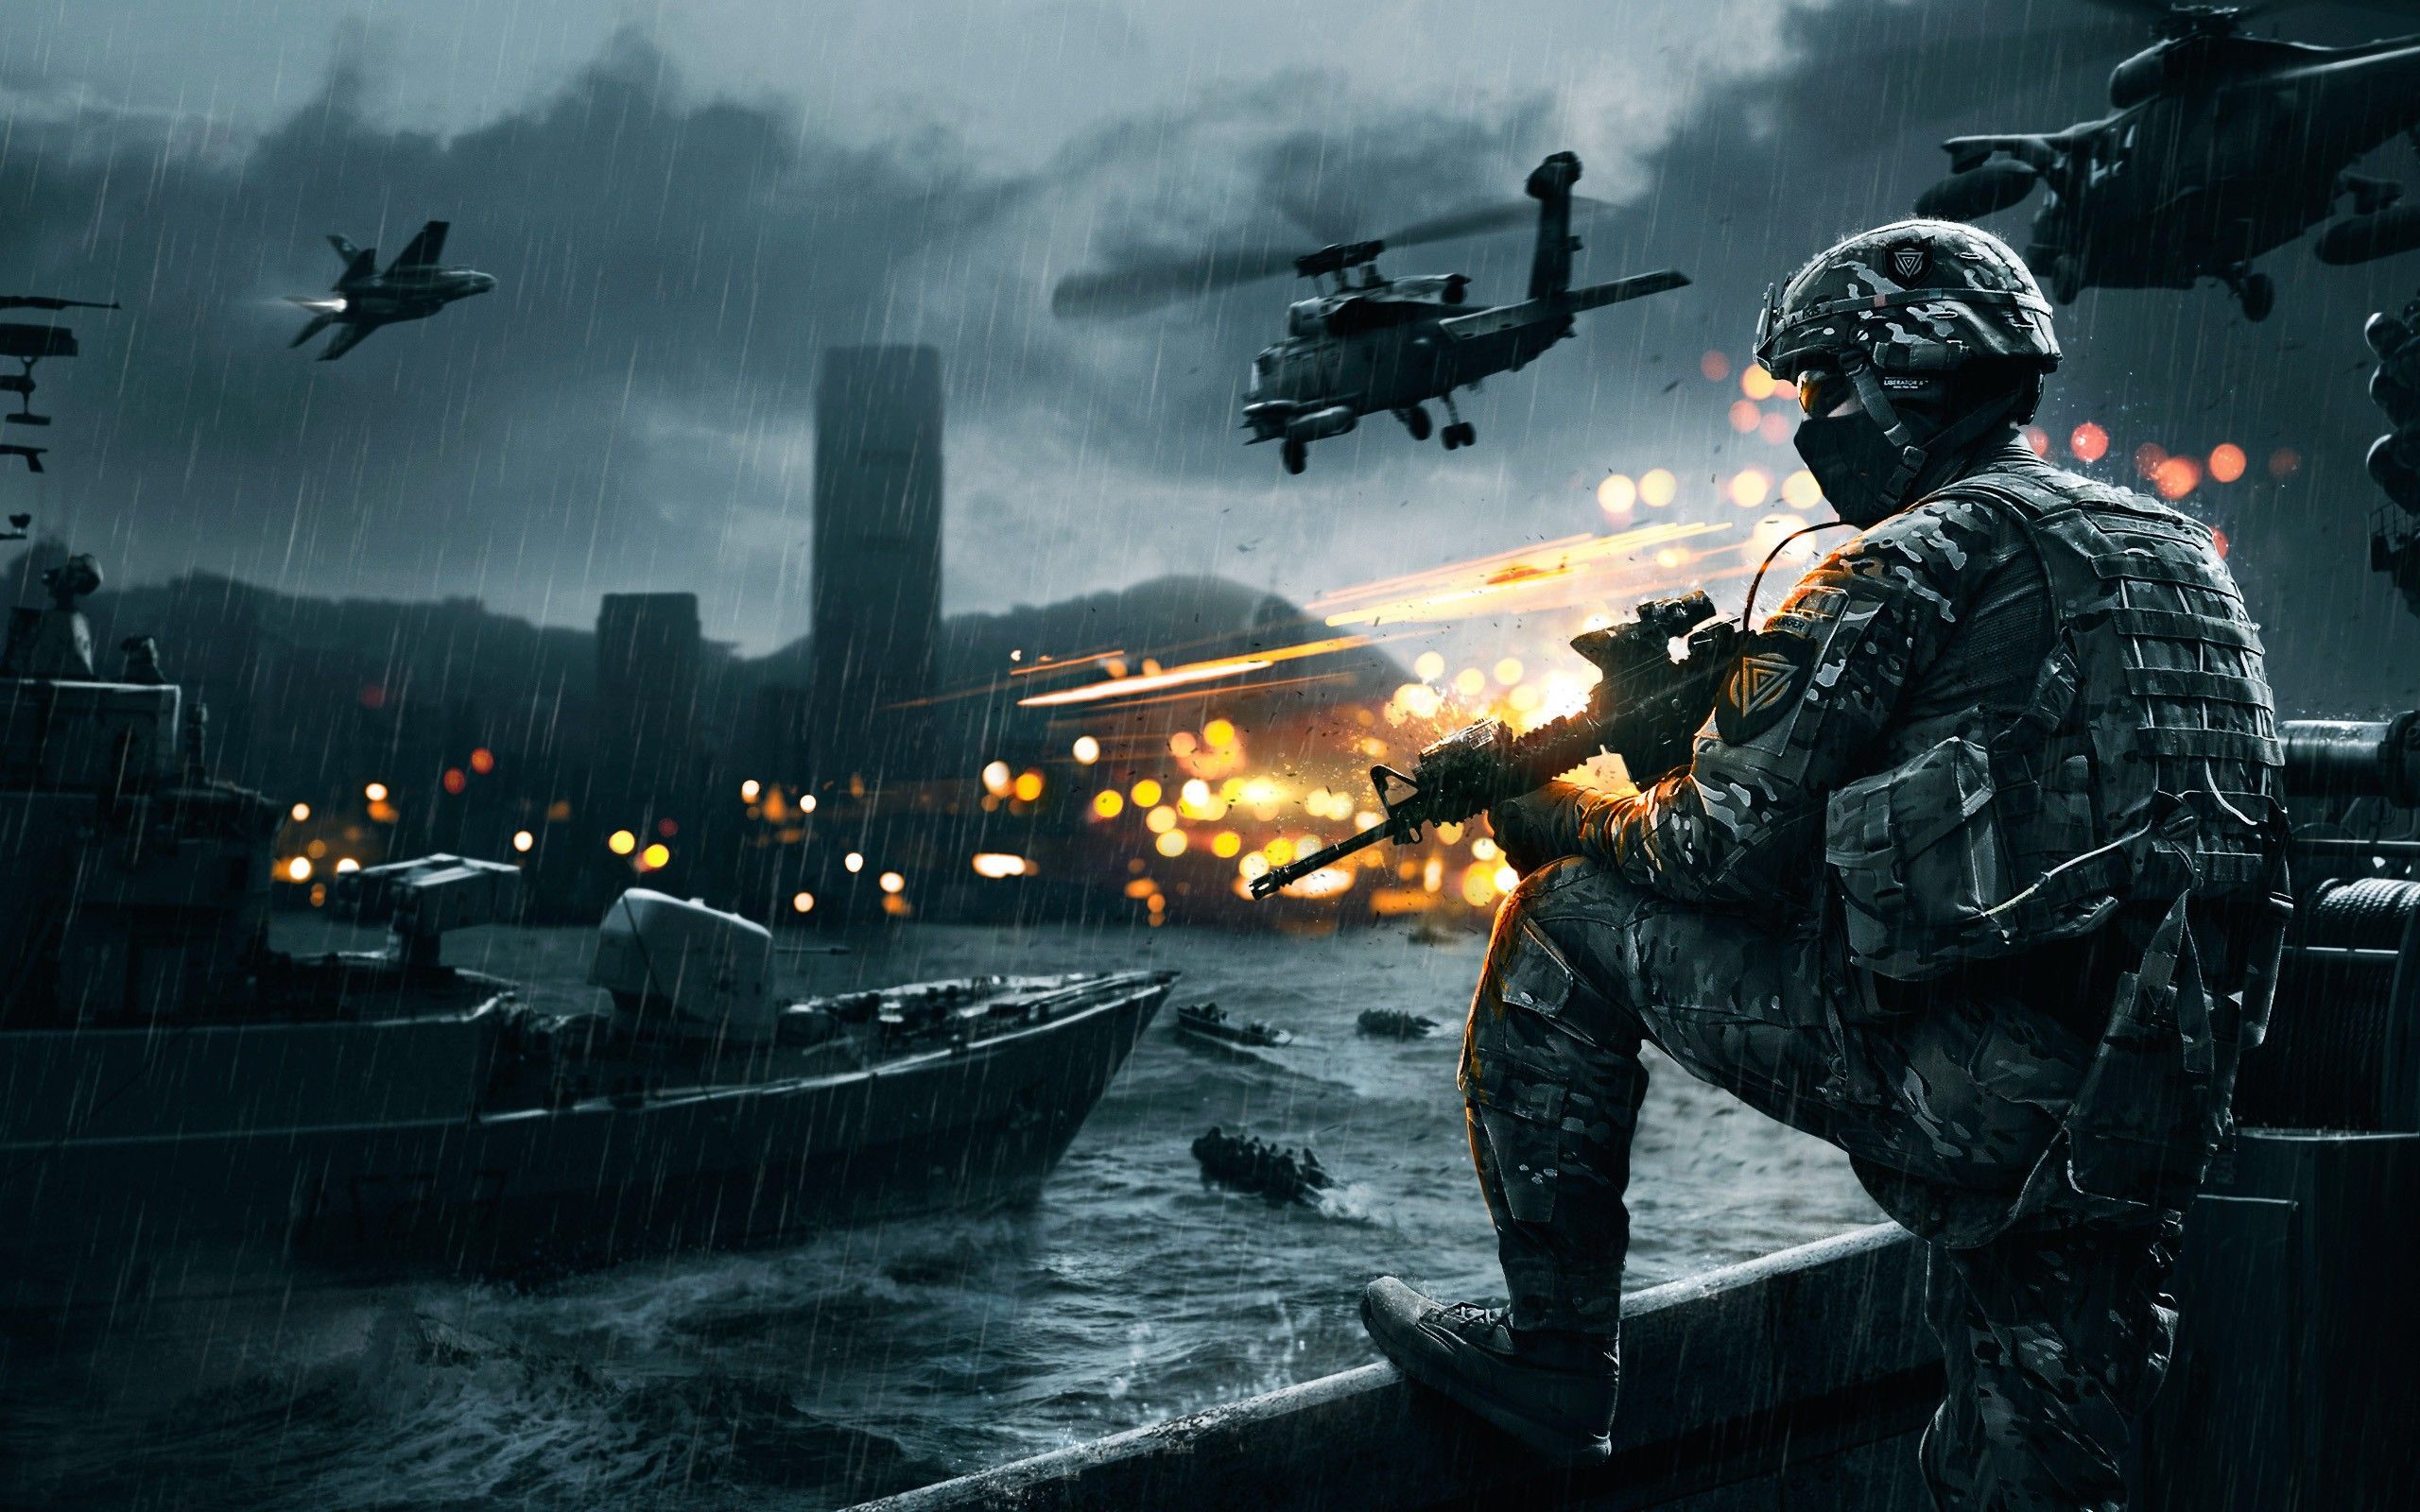 Battlefield 4 HD Wallpaper, Battlefield 4 Images | Cool Wallpapers